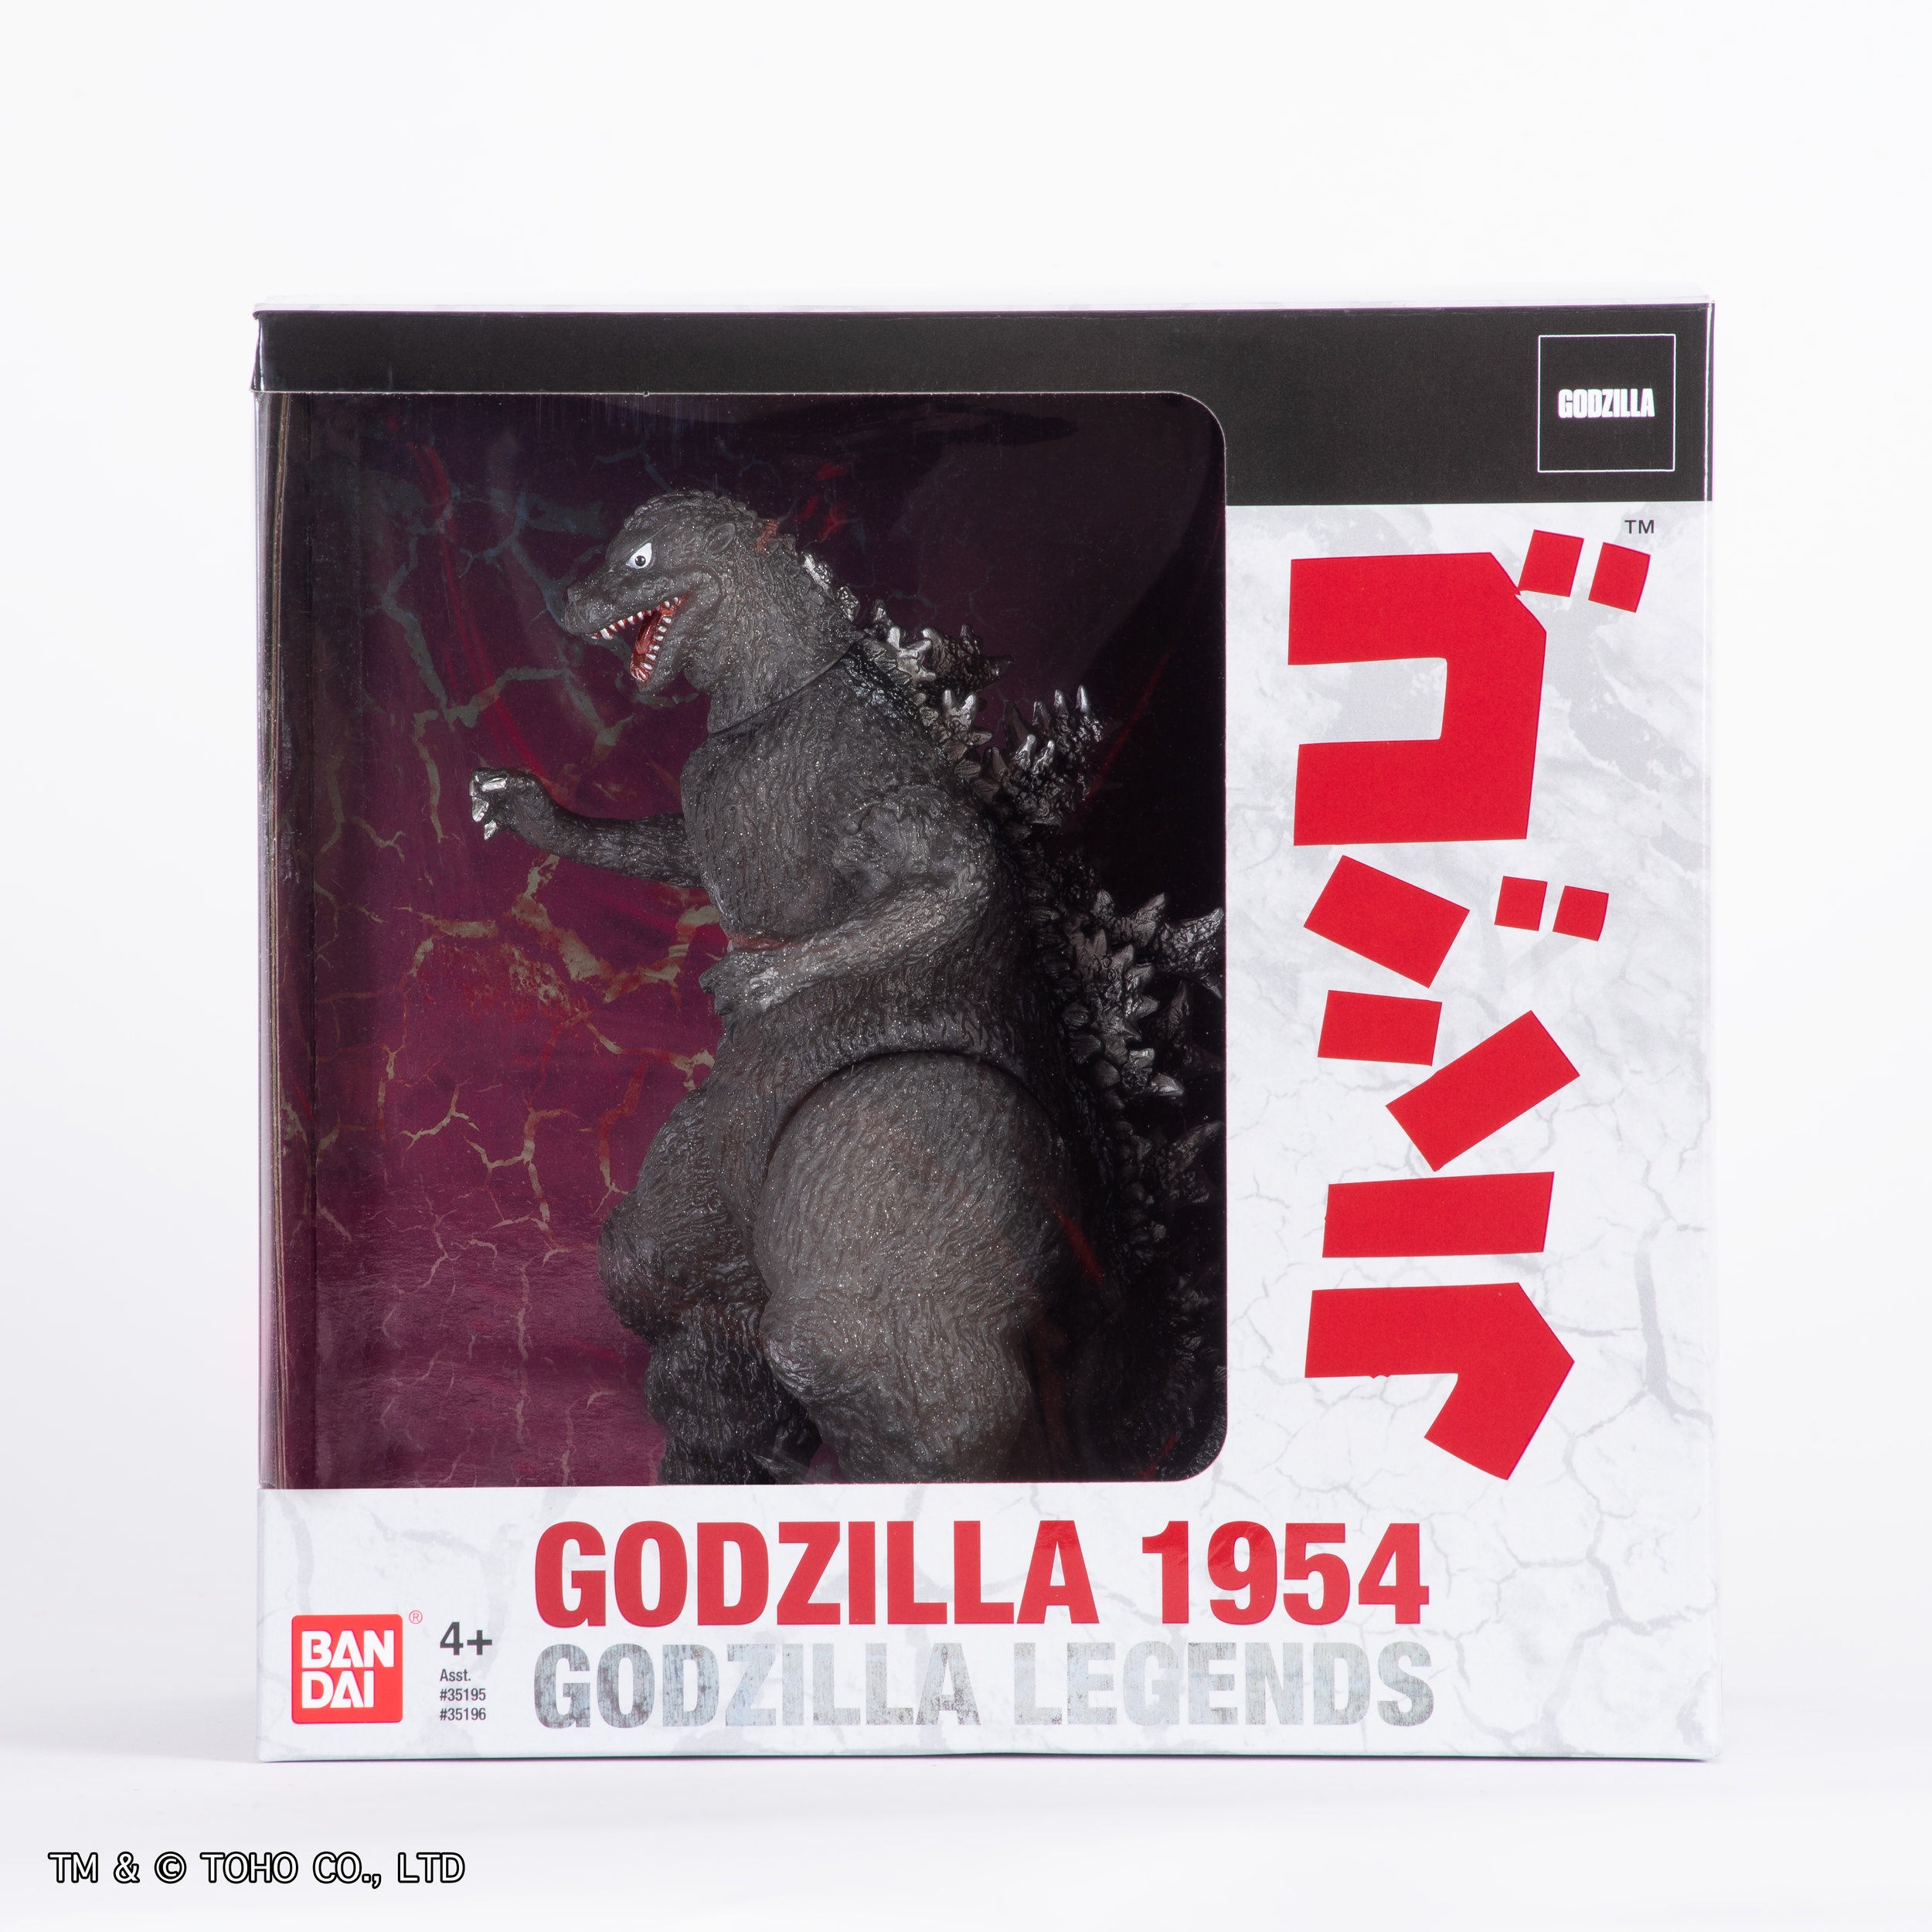 Godzilla box without sleeve (1).jpg